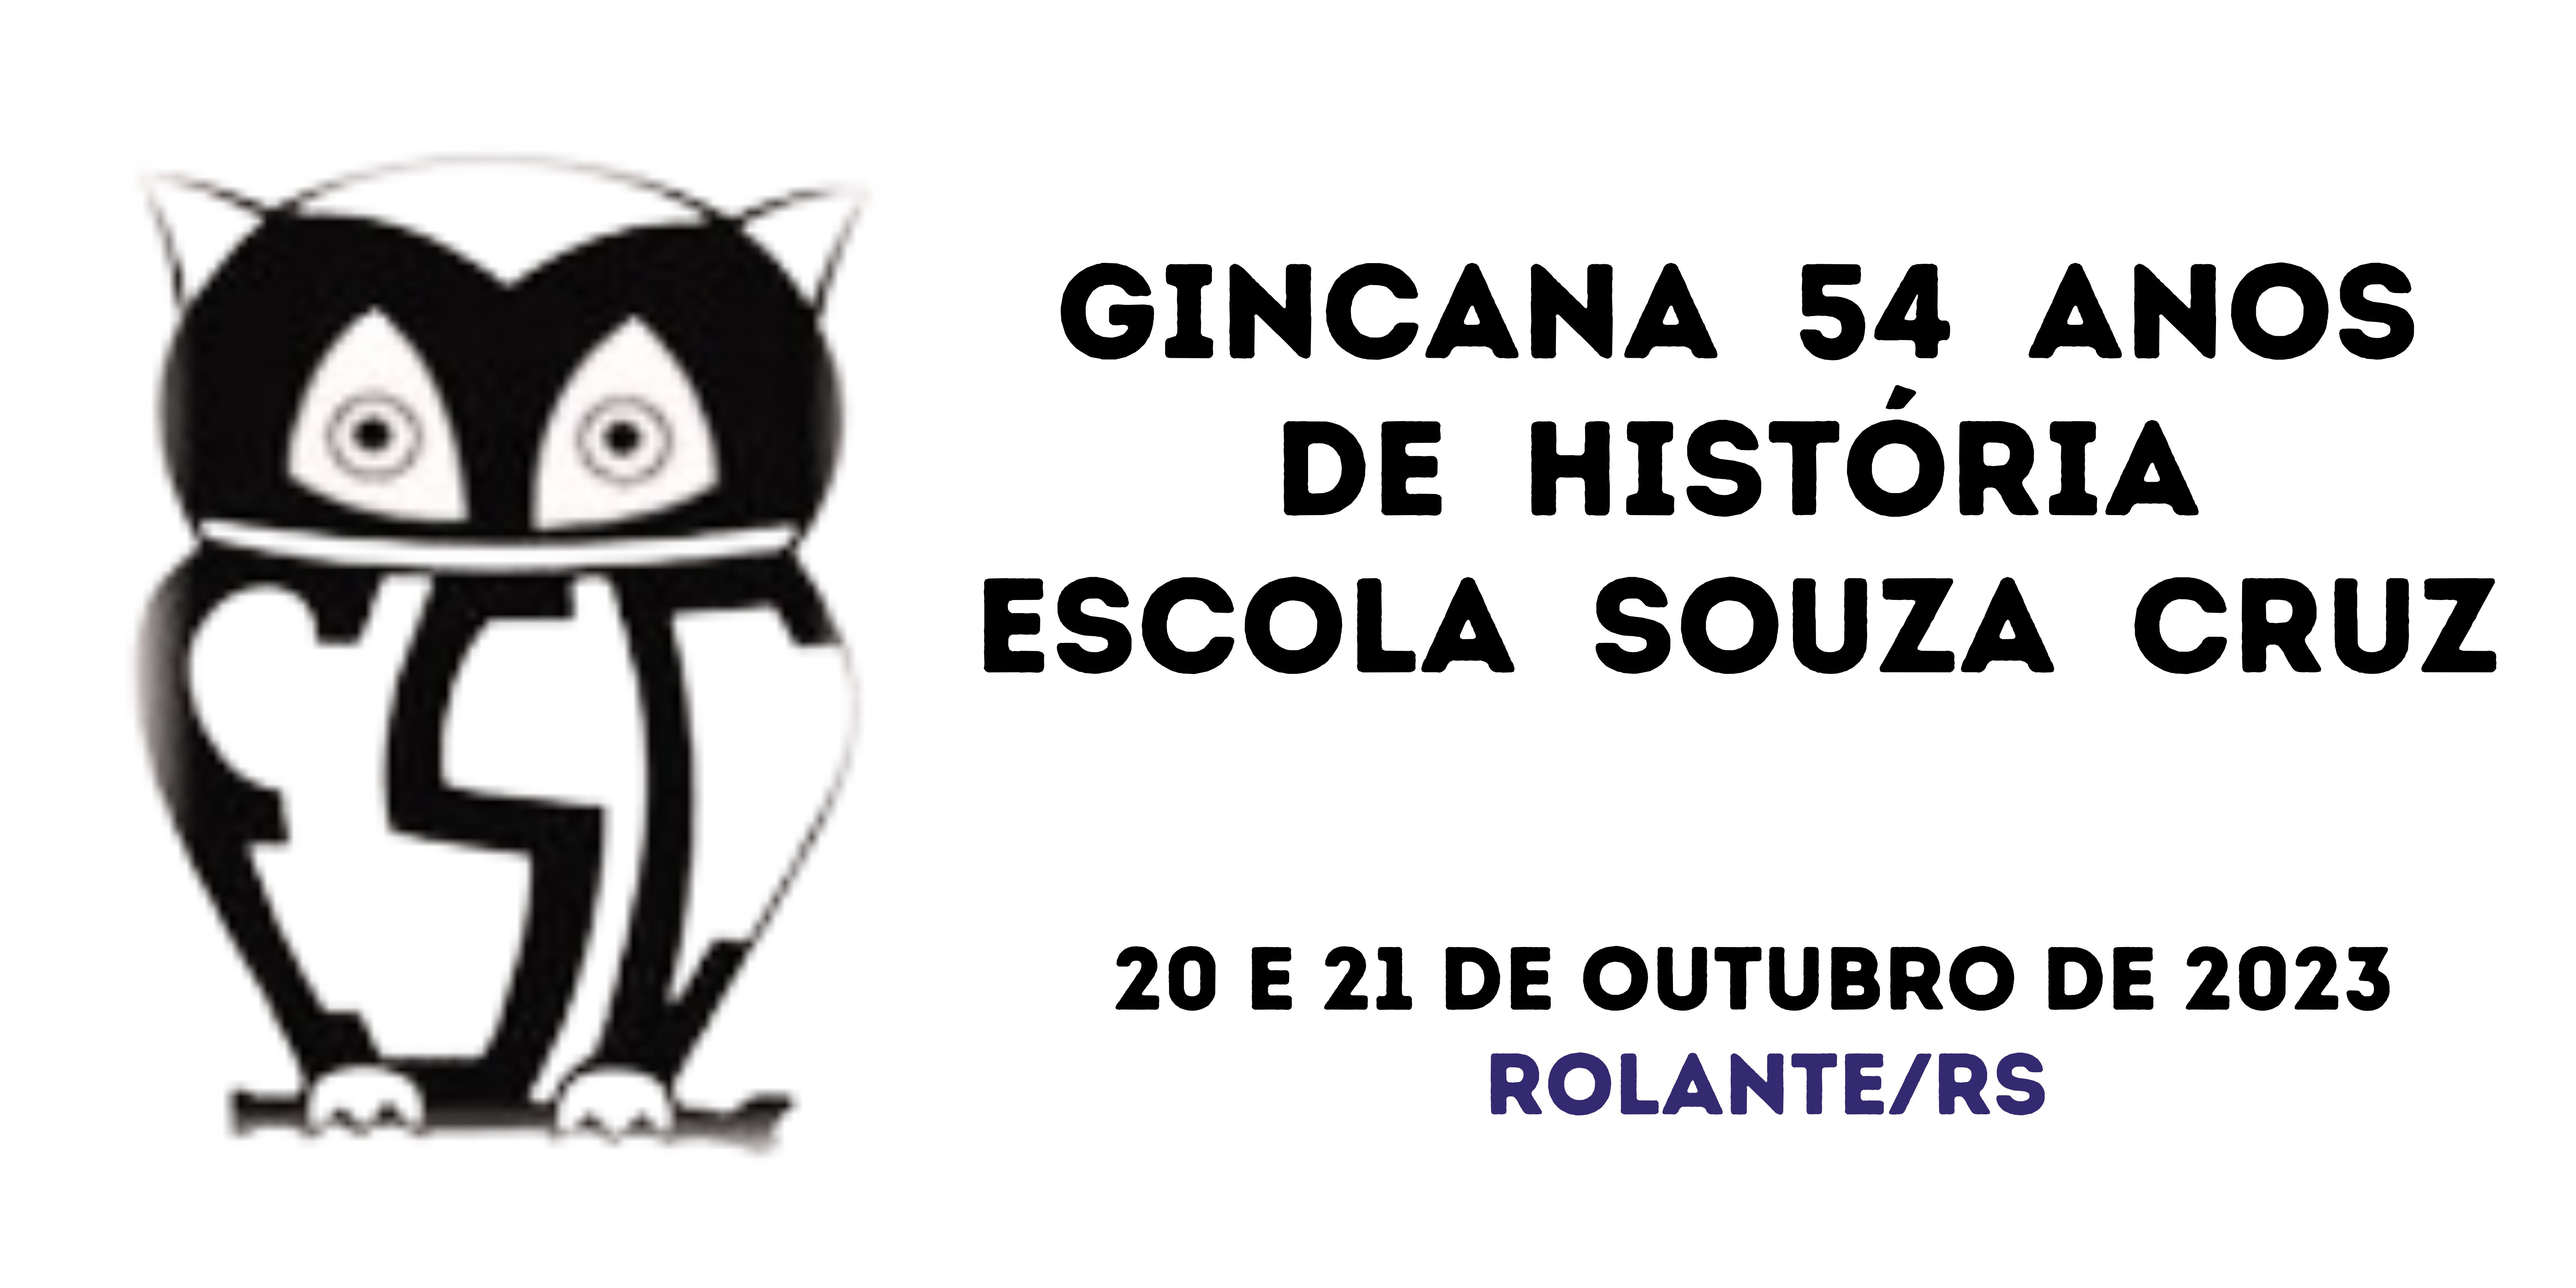 Gincana 54 Anos de História Escola Souza Cruz